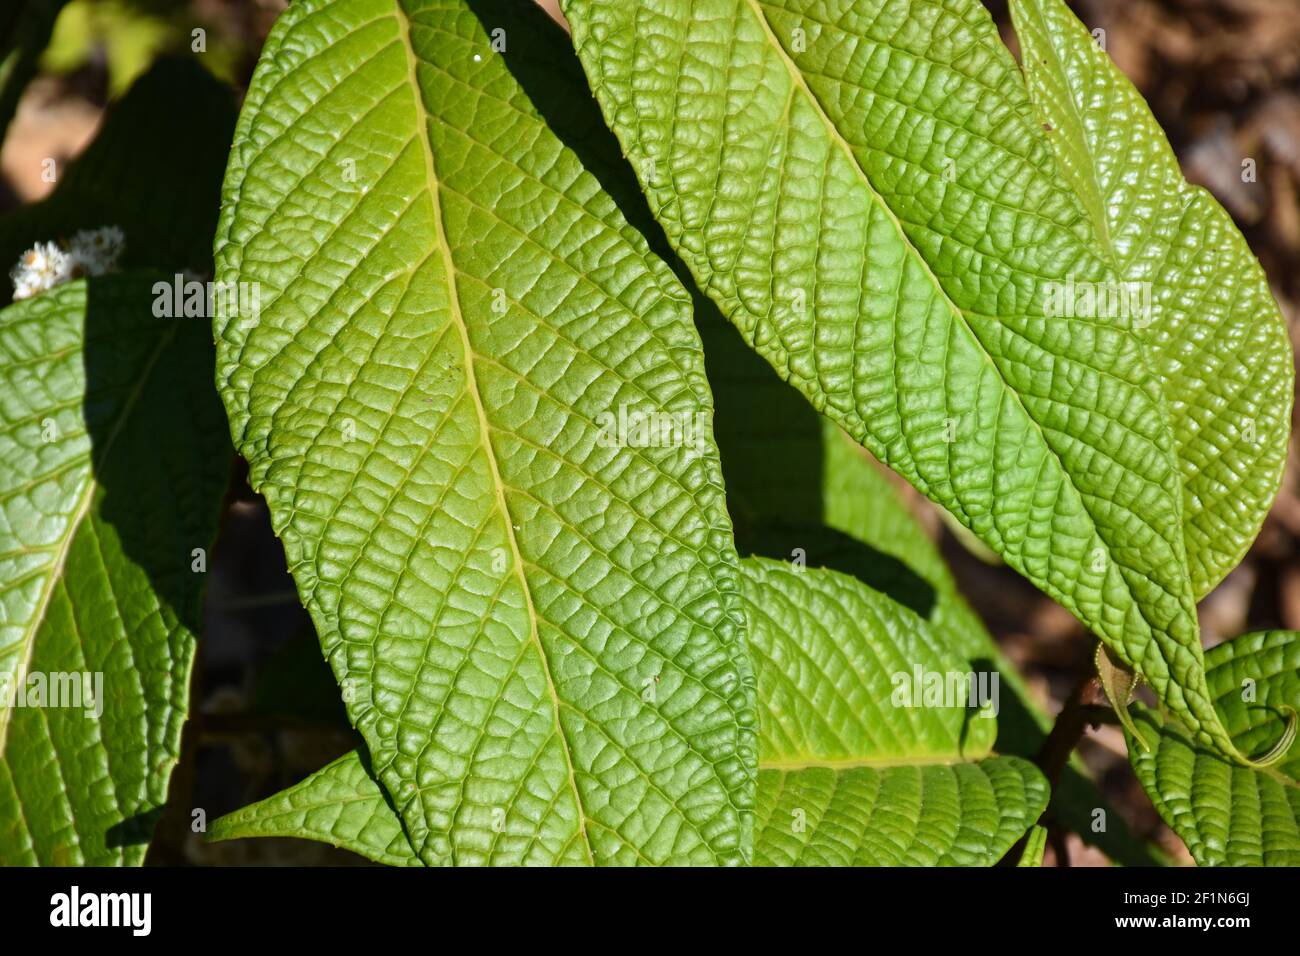 Grün gemusterte Blätter mit definiertem erhabenen Muster und Adern Stockfoto